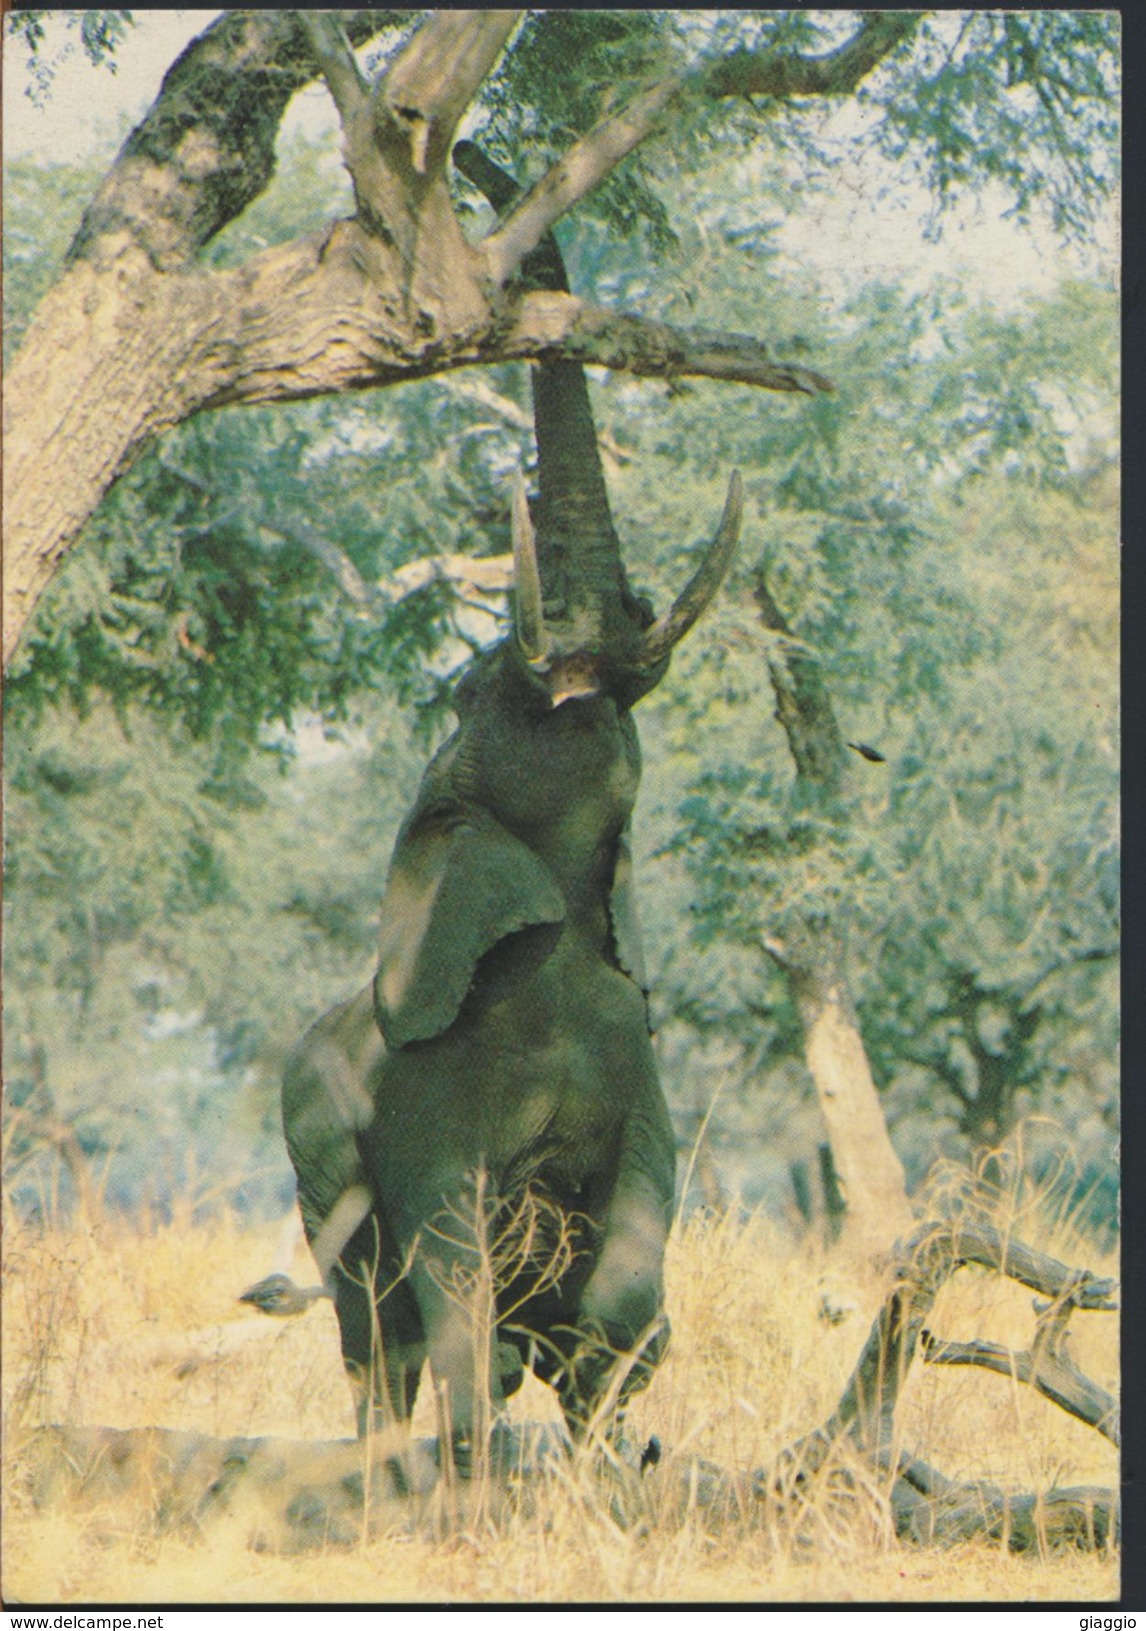 °°° 1665 - ZIMBABWE - ELEPHANT REACHING FOR A TASTY MORSEL - 1989 °°° - Simbabwe